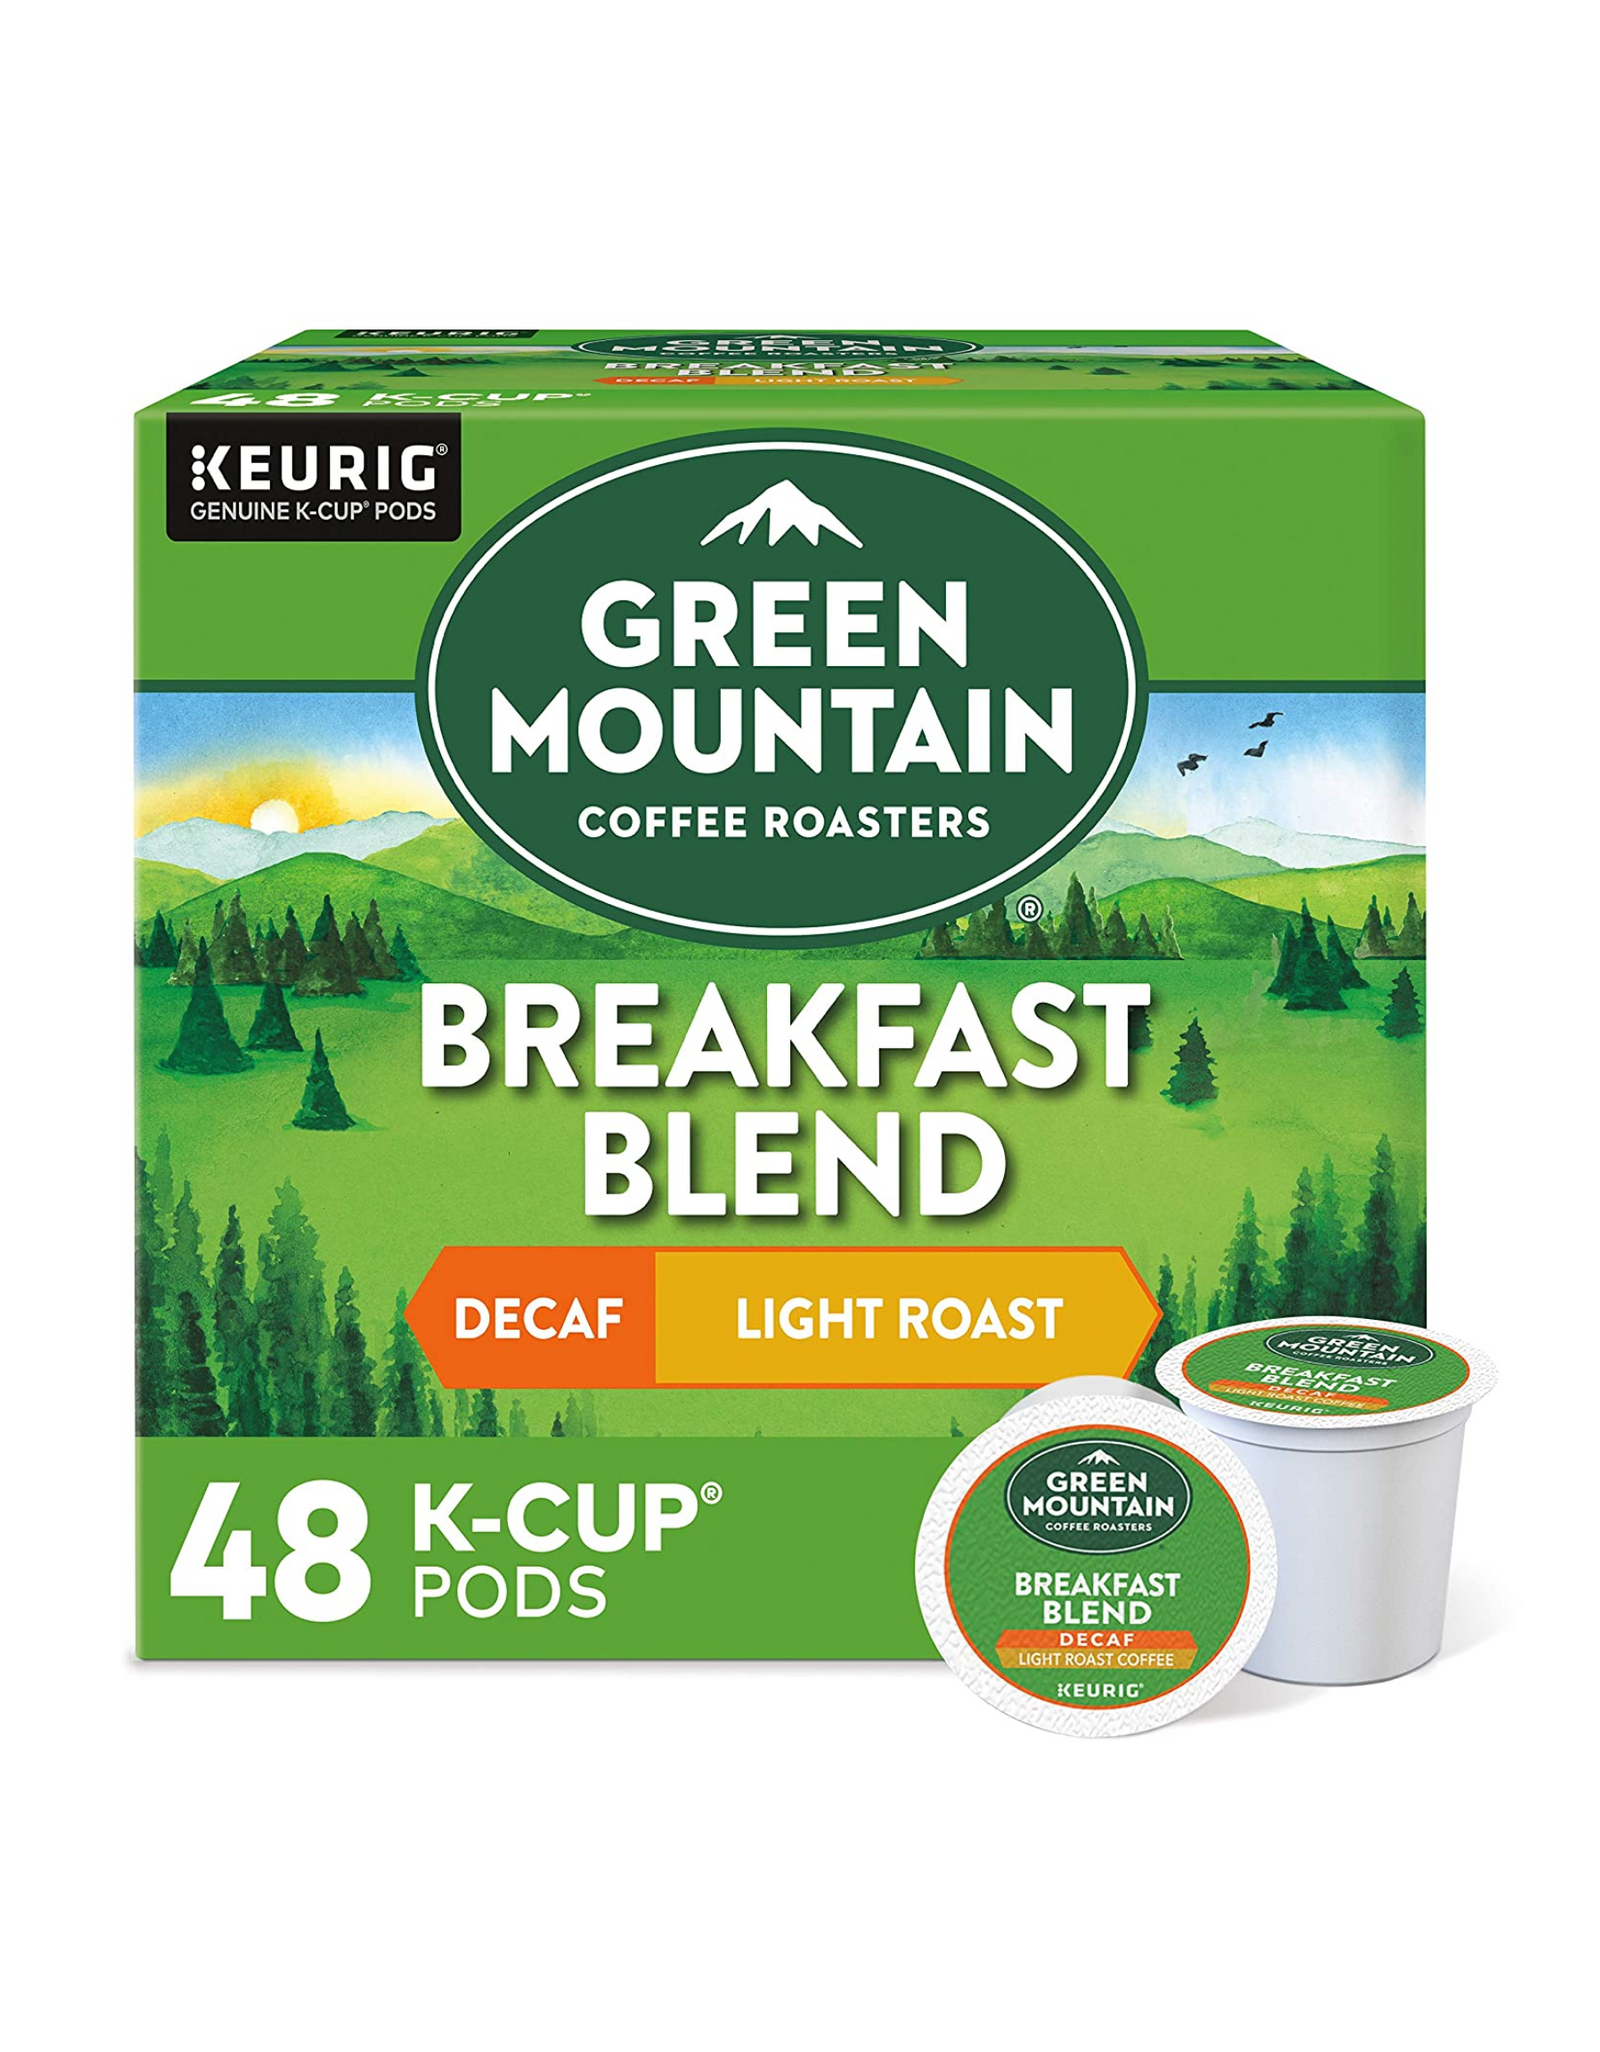 Green Mountain Coffee Roasters Breakfast Blend Keurig K-Cup Pods, Decaf Light Roast Coffee, 48 Ct (Pack of 1)